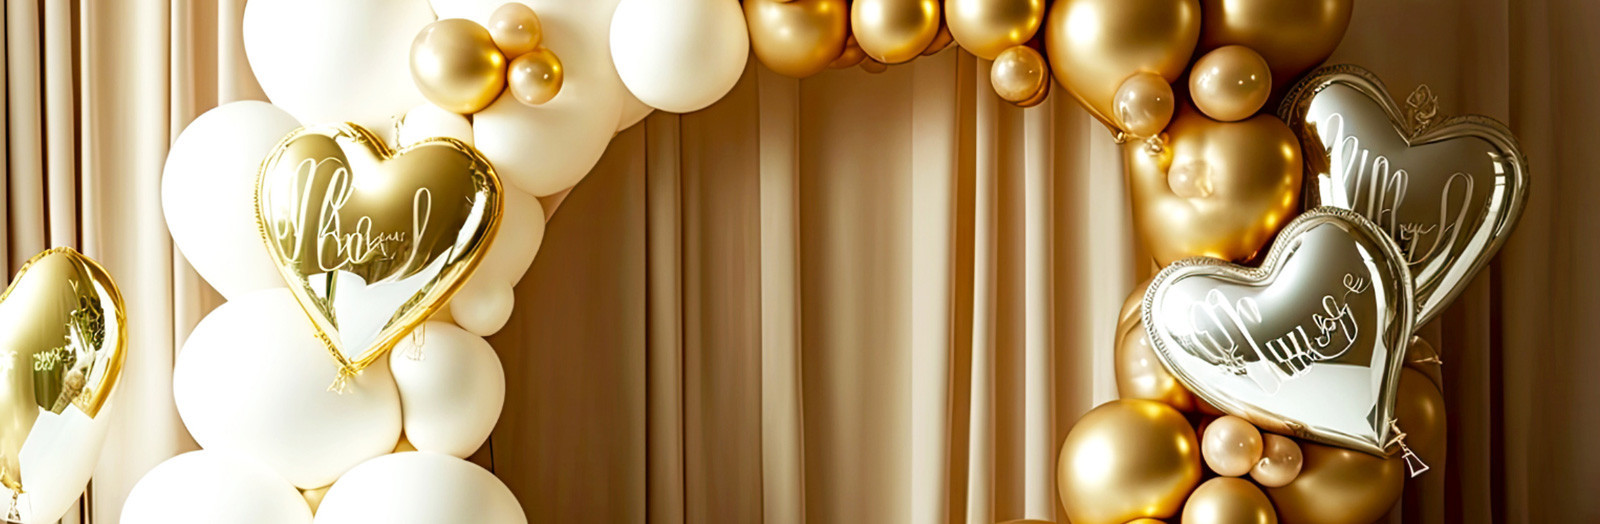 Ballon gonflable géant - Deco salle mariage